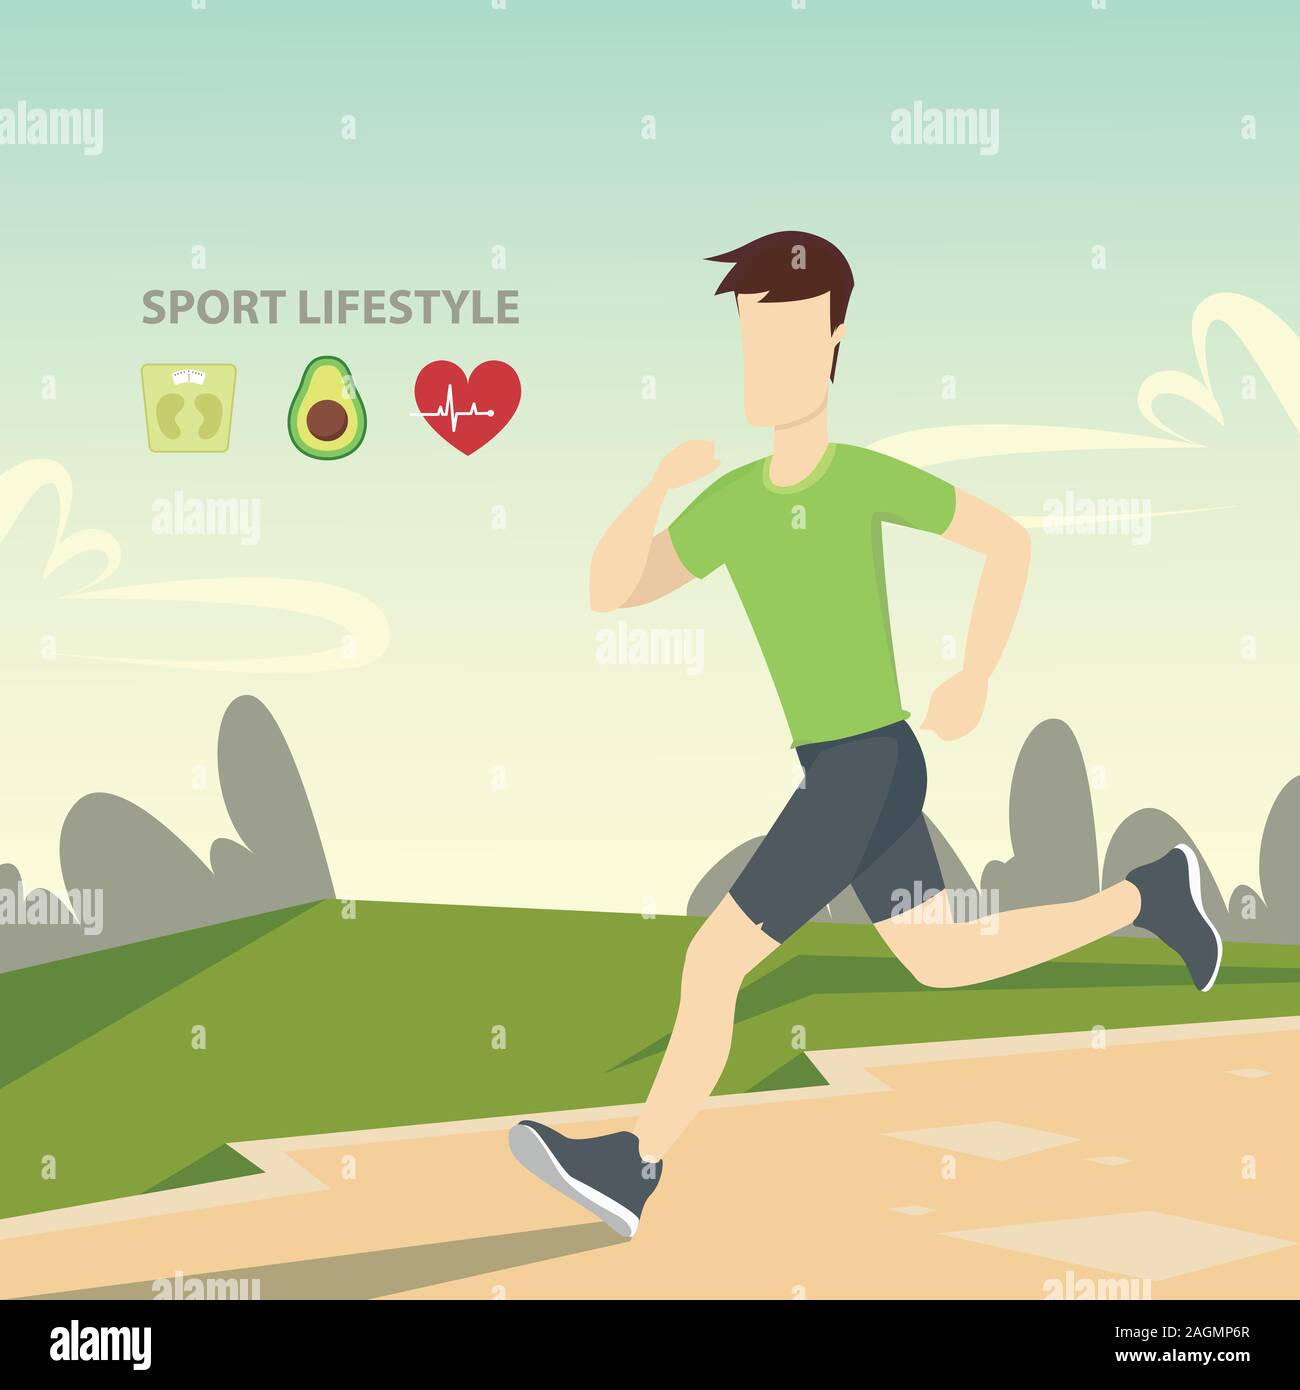 Stile di vita sportivo. Corsi di fitness, uno stile di vita sano, sport attivo, rafforzare il corpo fisicamente e spiritualmente. Illustrazione Vettoriale